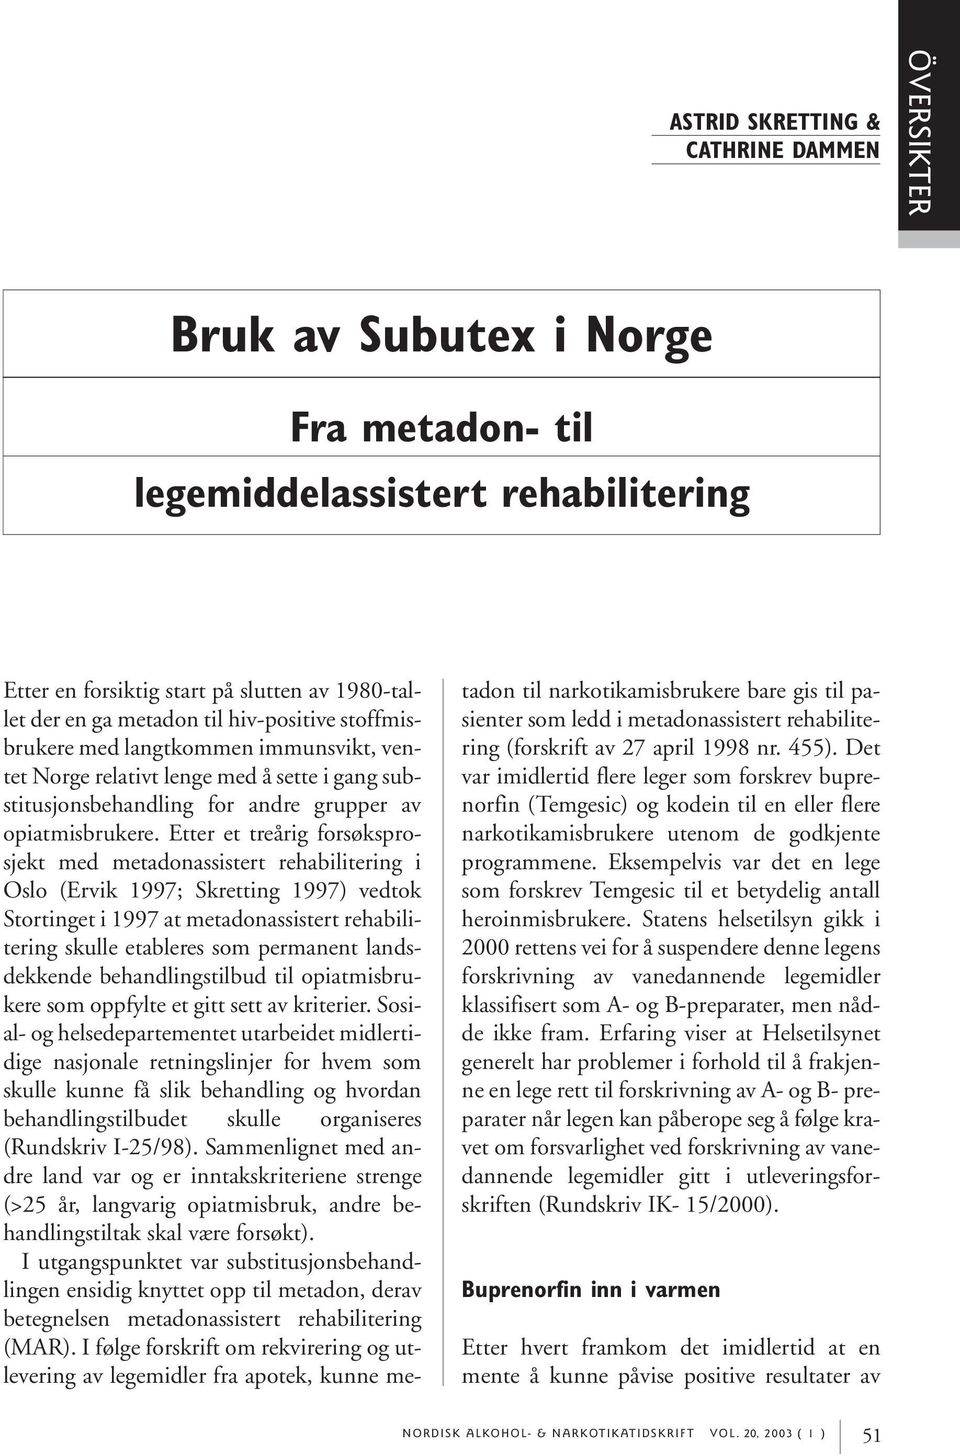 Etter et treårig forsøksprosjekt med metadonassistert rehabilitering i Oslo (Ervik 1997; Skretting 1997) vedtok Stortinget i 1997 at metadonassistert rehabilitering skulle etableres som permanent